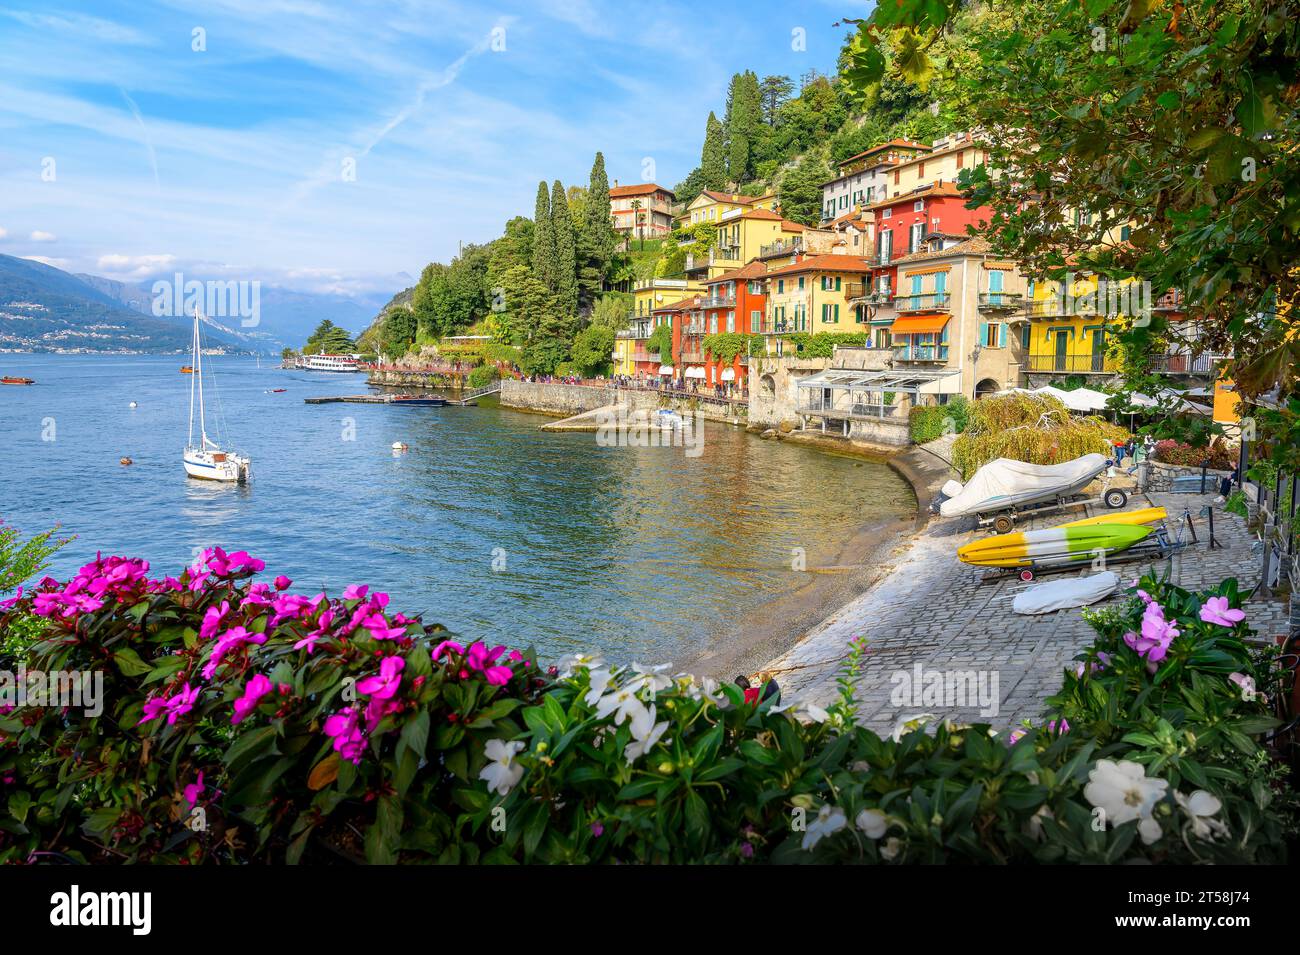 Paysage avec la ville de Varenna dans la région du lac de Côme, Italie Banque D'Images